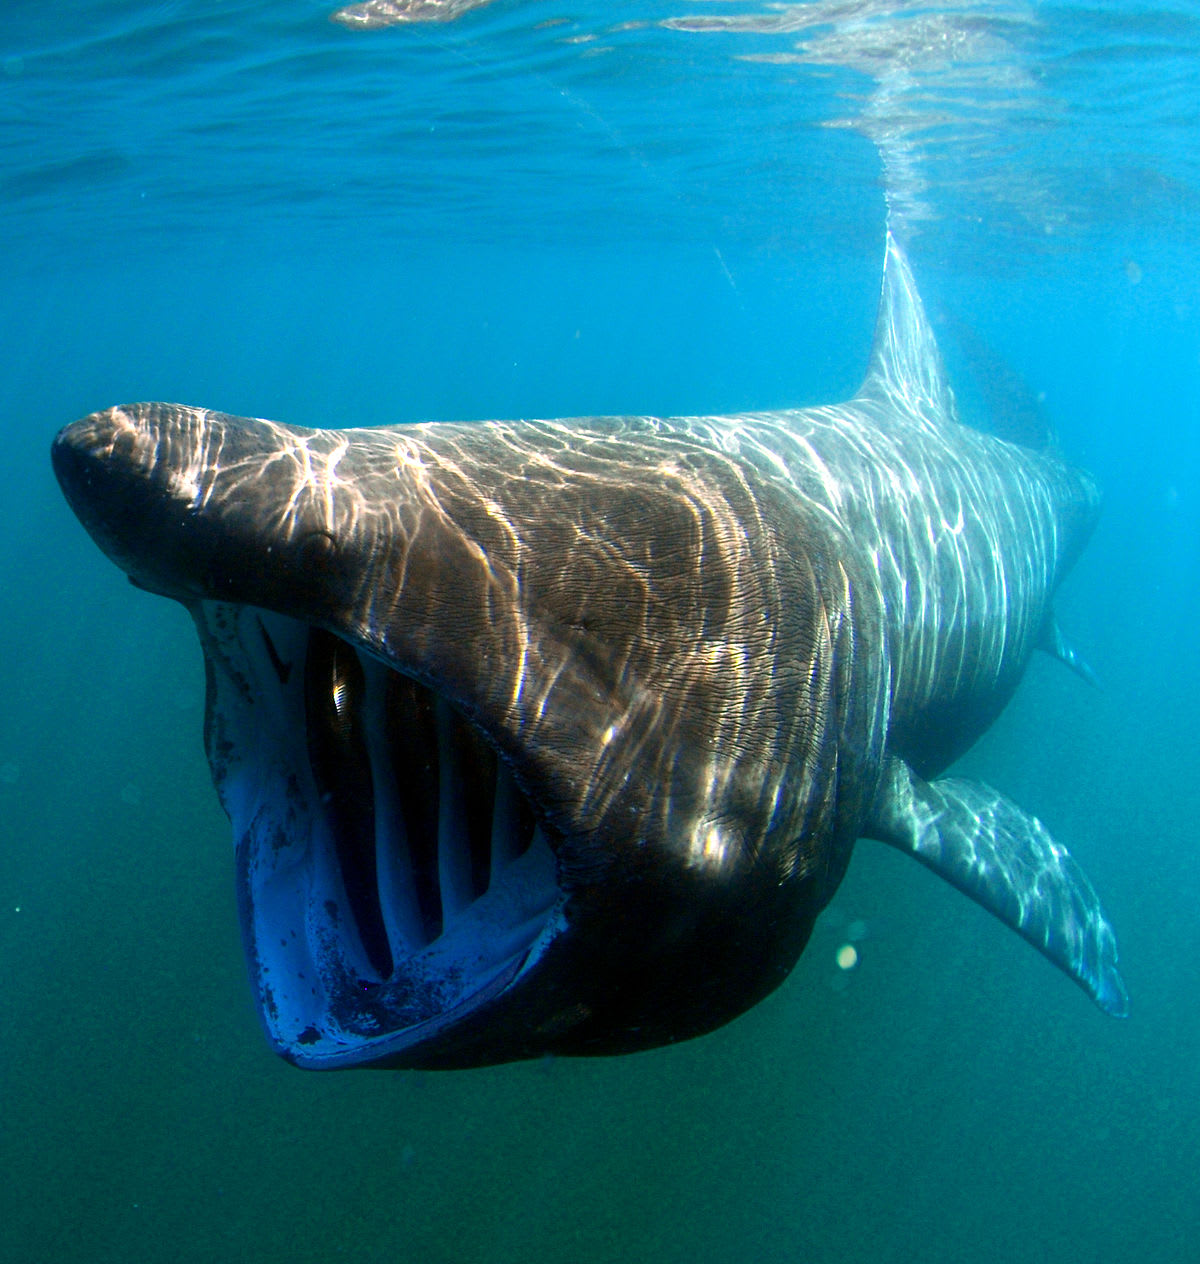 Žralok velkoústý byl poprvé objeven až v sedmdesátých letech minulé století. Na rozdíl od jiných žraločích druhů se živí planktonem a krilem